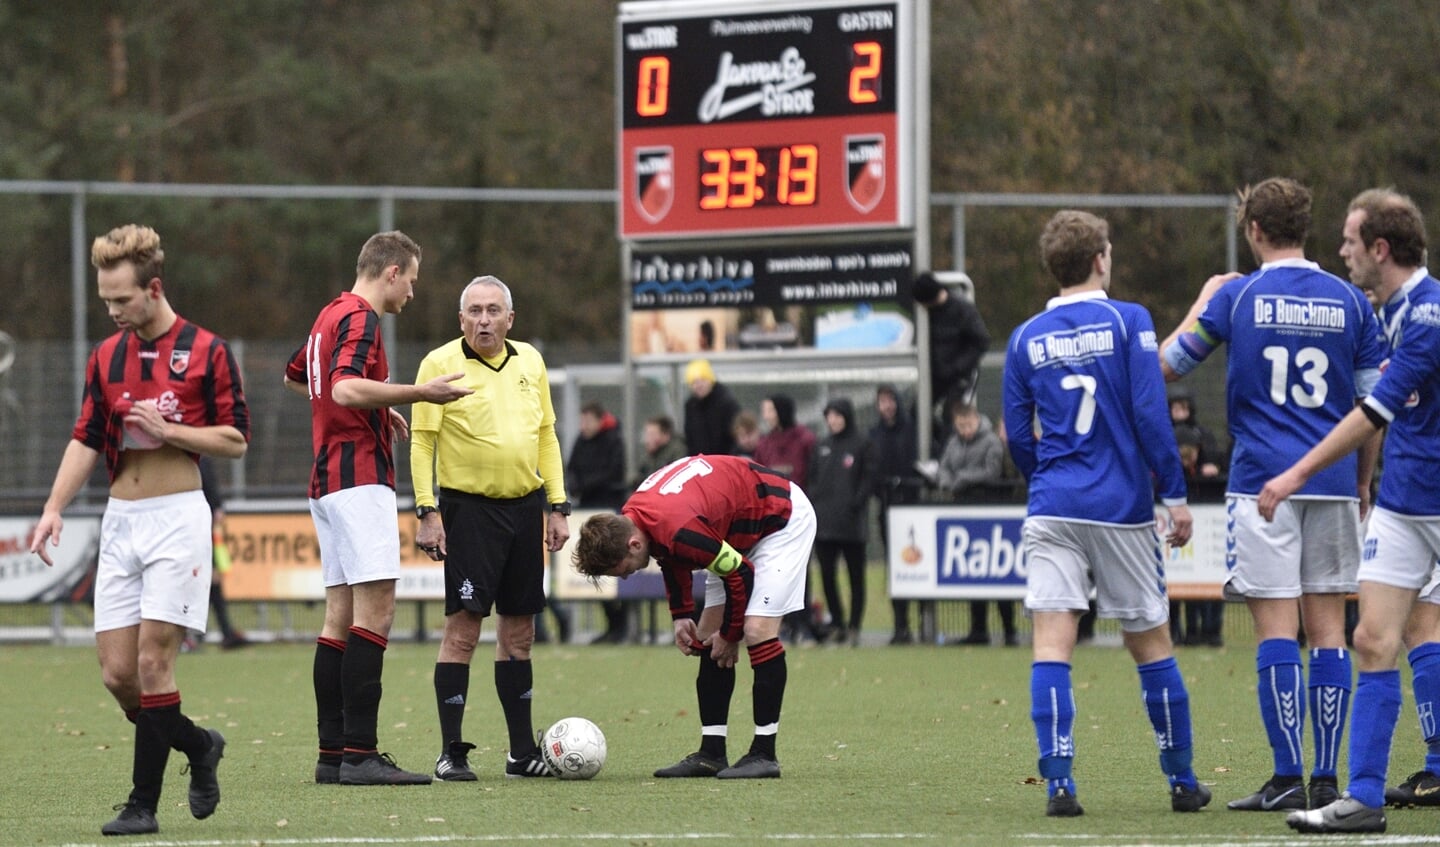 Voetbal: derby Stroe - VVOP